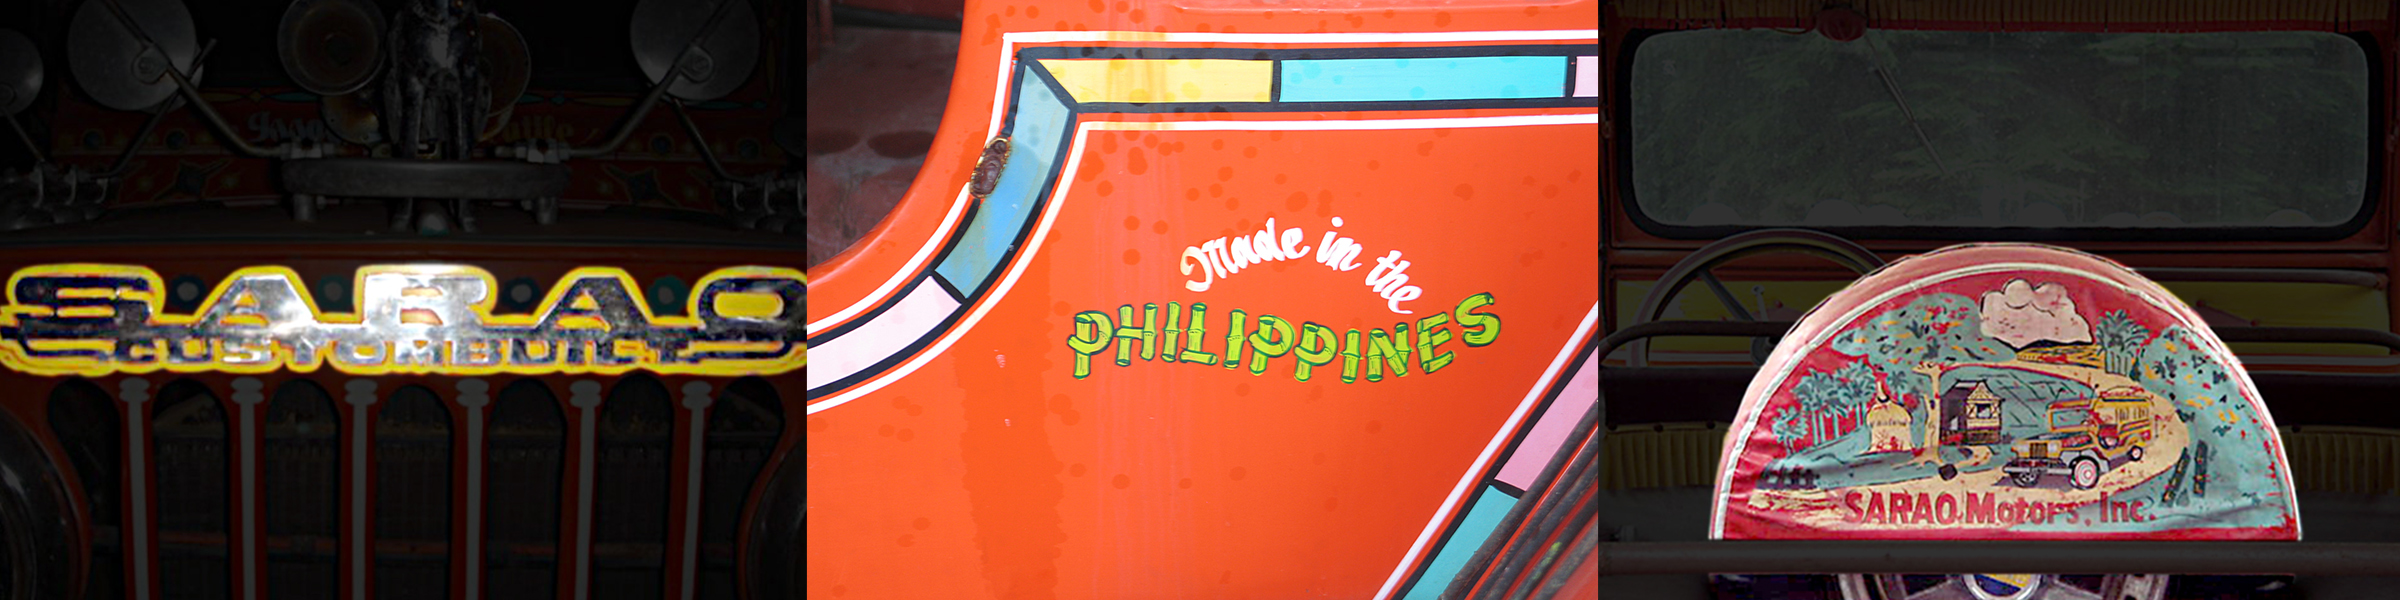 Jeepney_Details_COMPOSITE_72